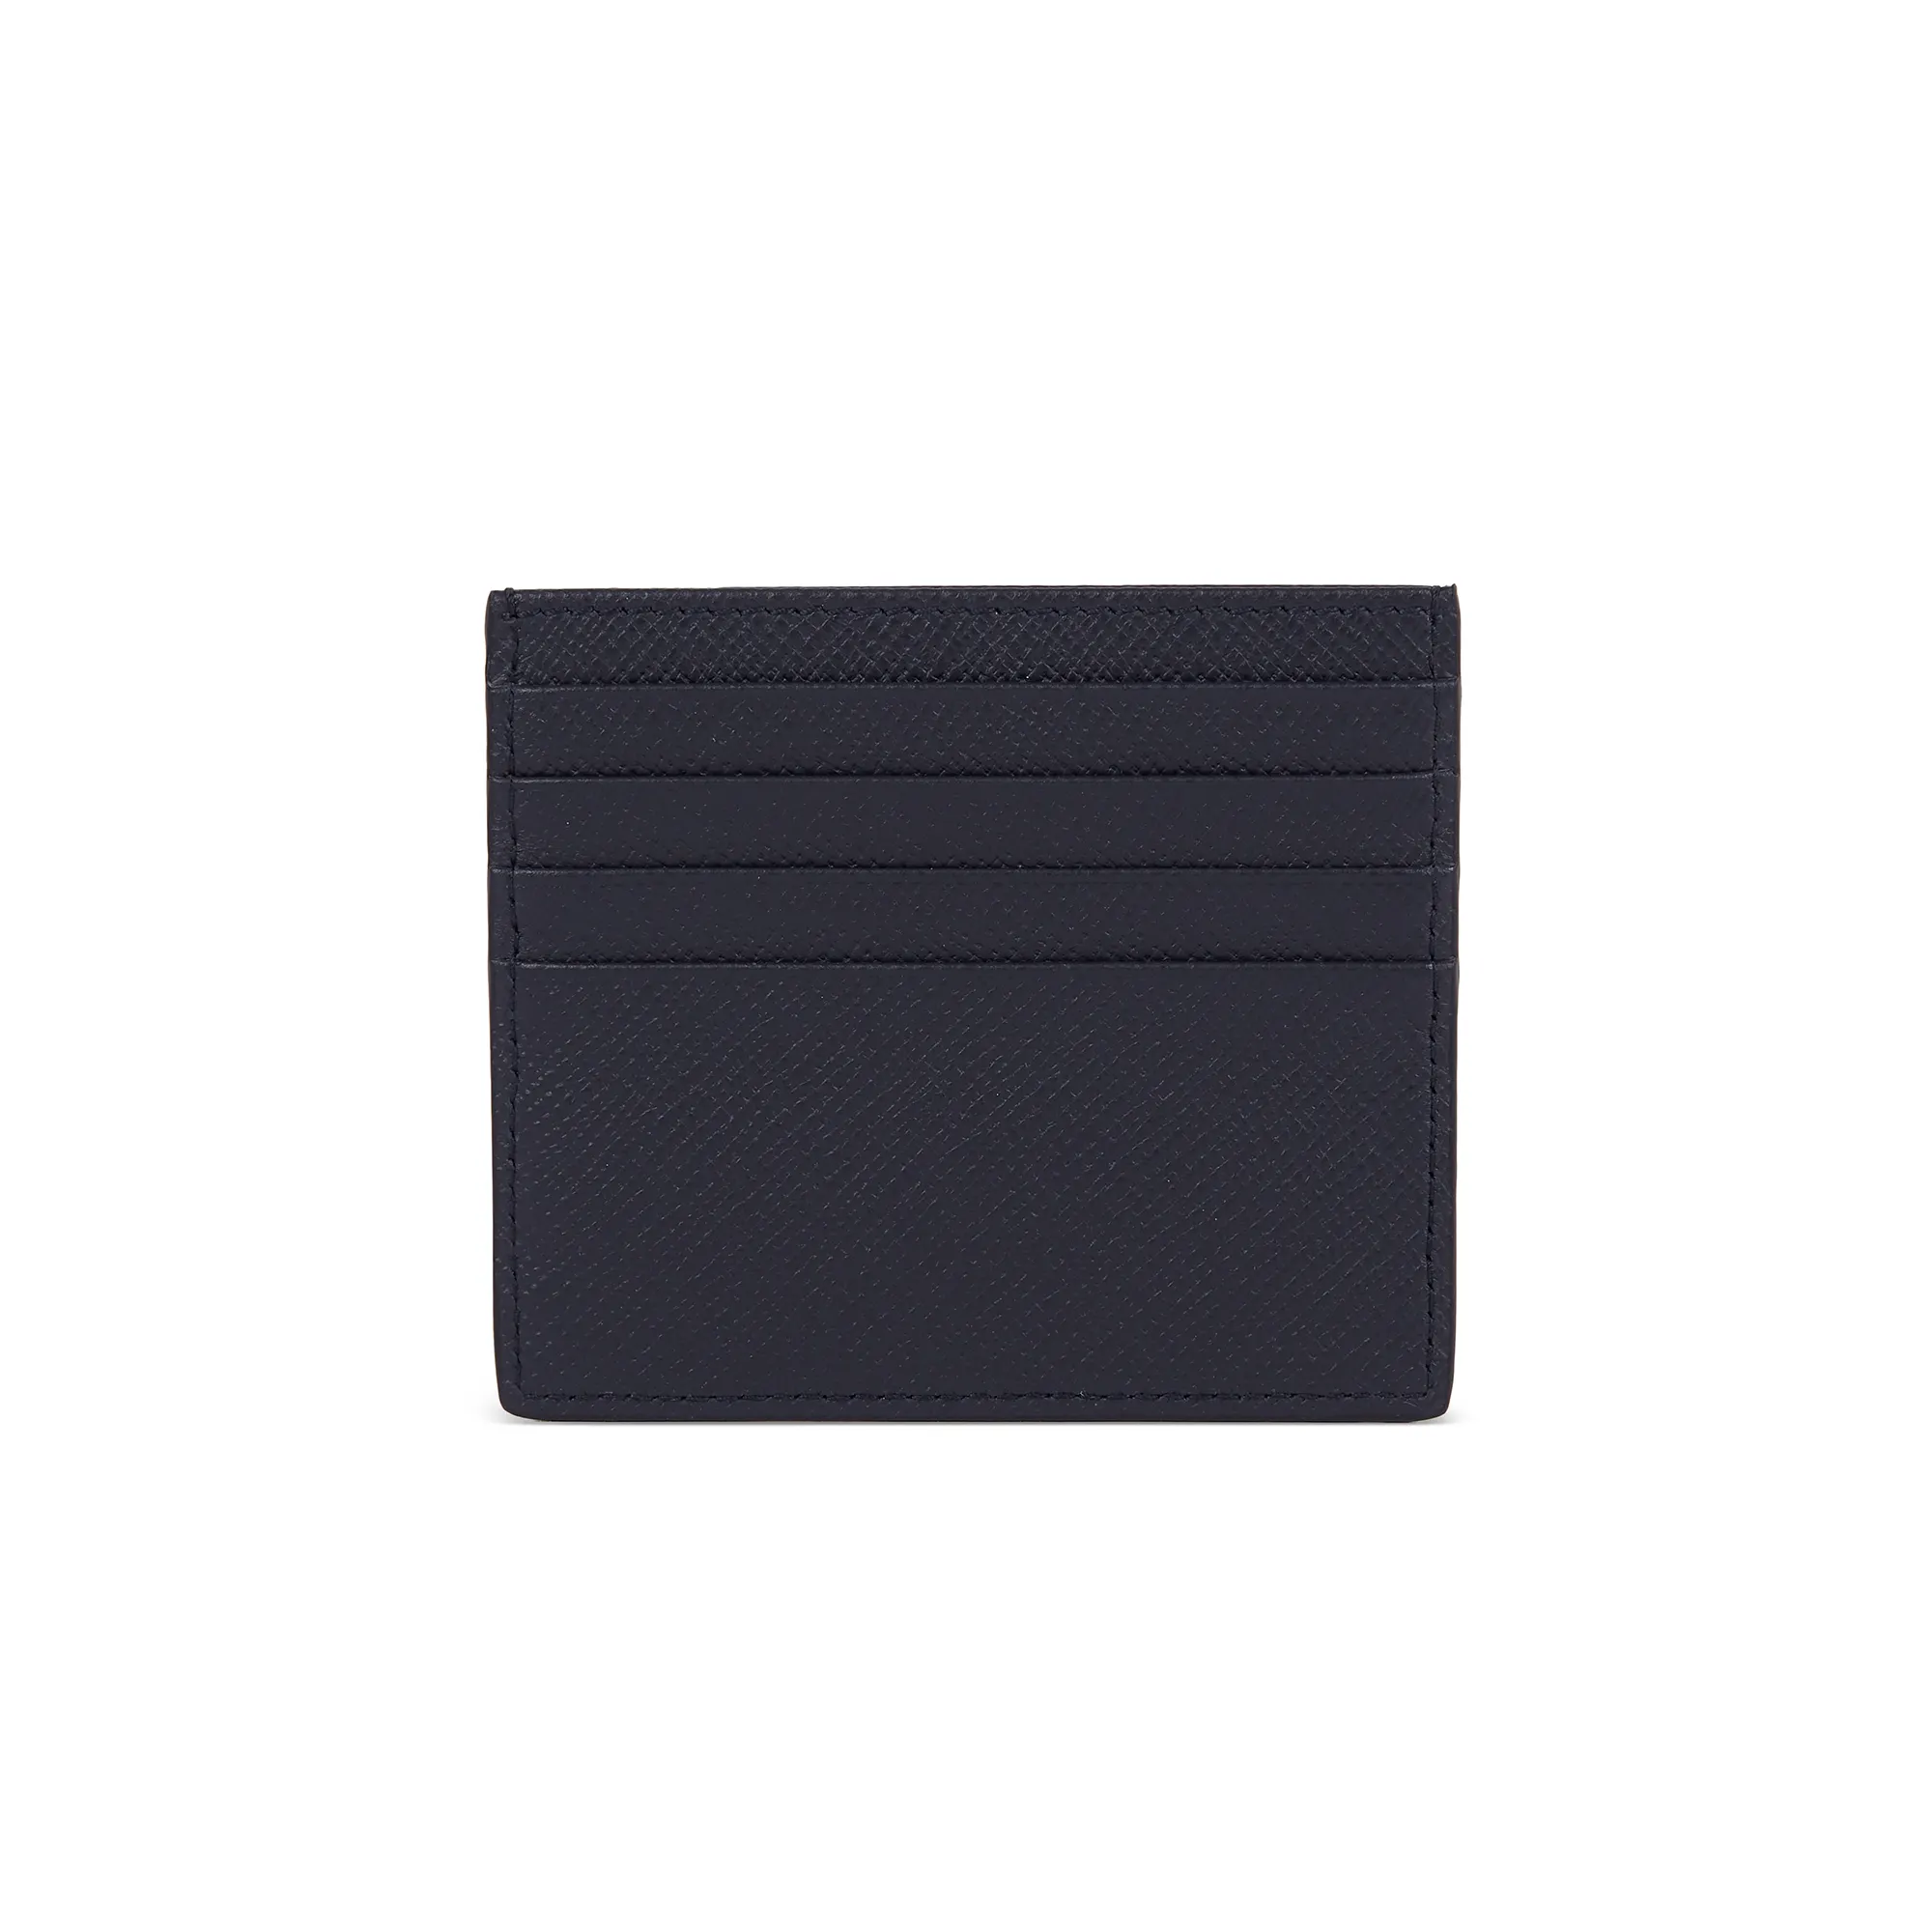 Hot Sale Custom Logo Farbe Saffiano Leder Slim Kreditkarten inhaber Brieftasche Minimalist RFID Geld klammer Karten halter